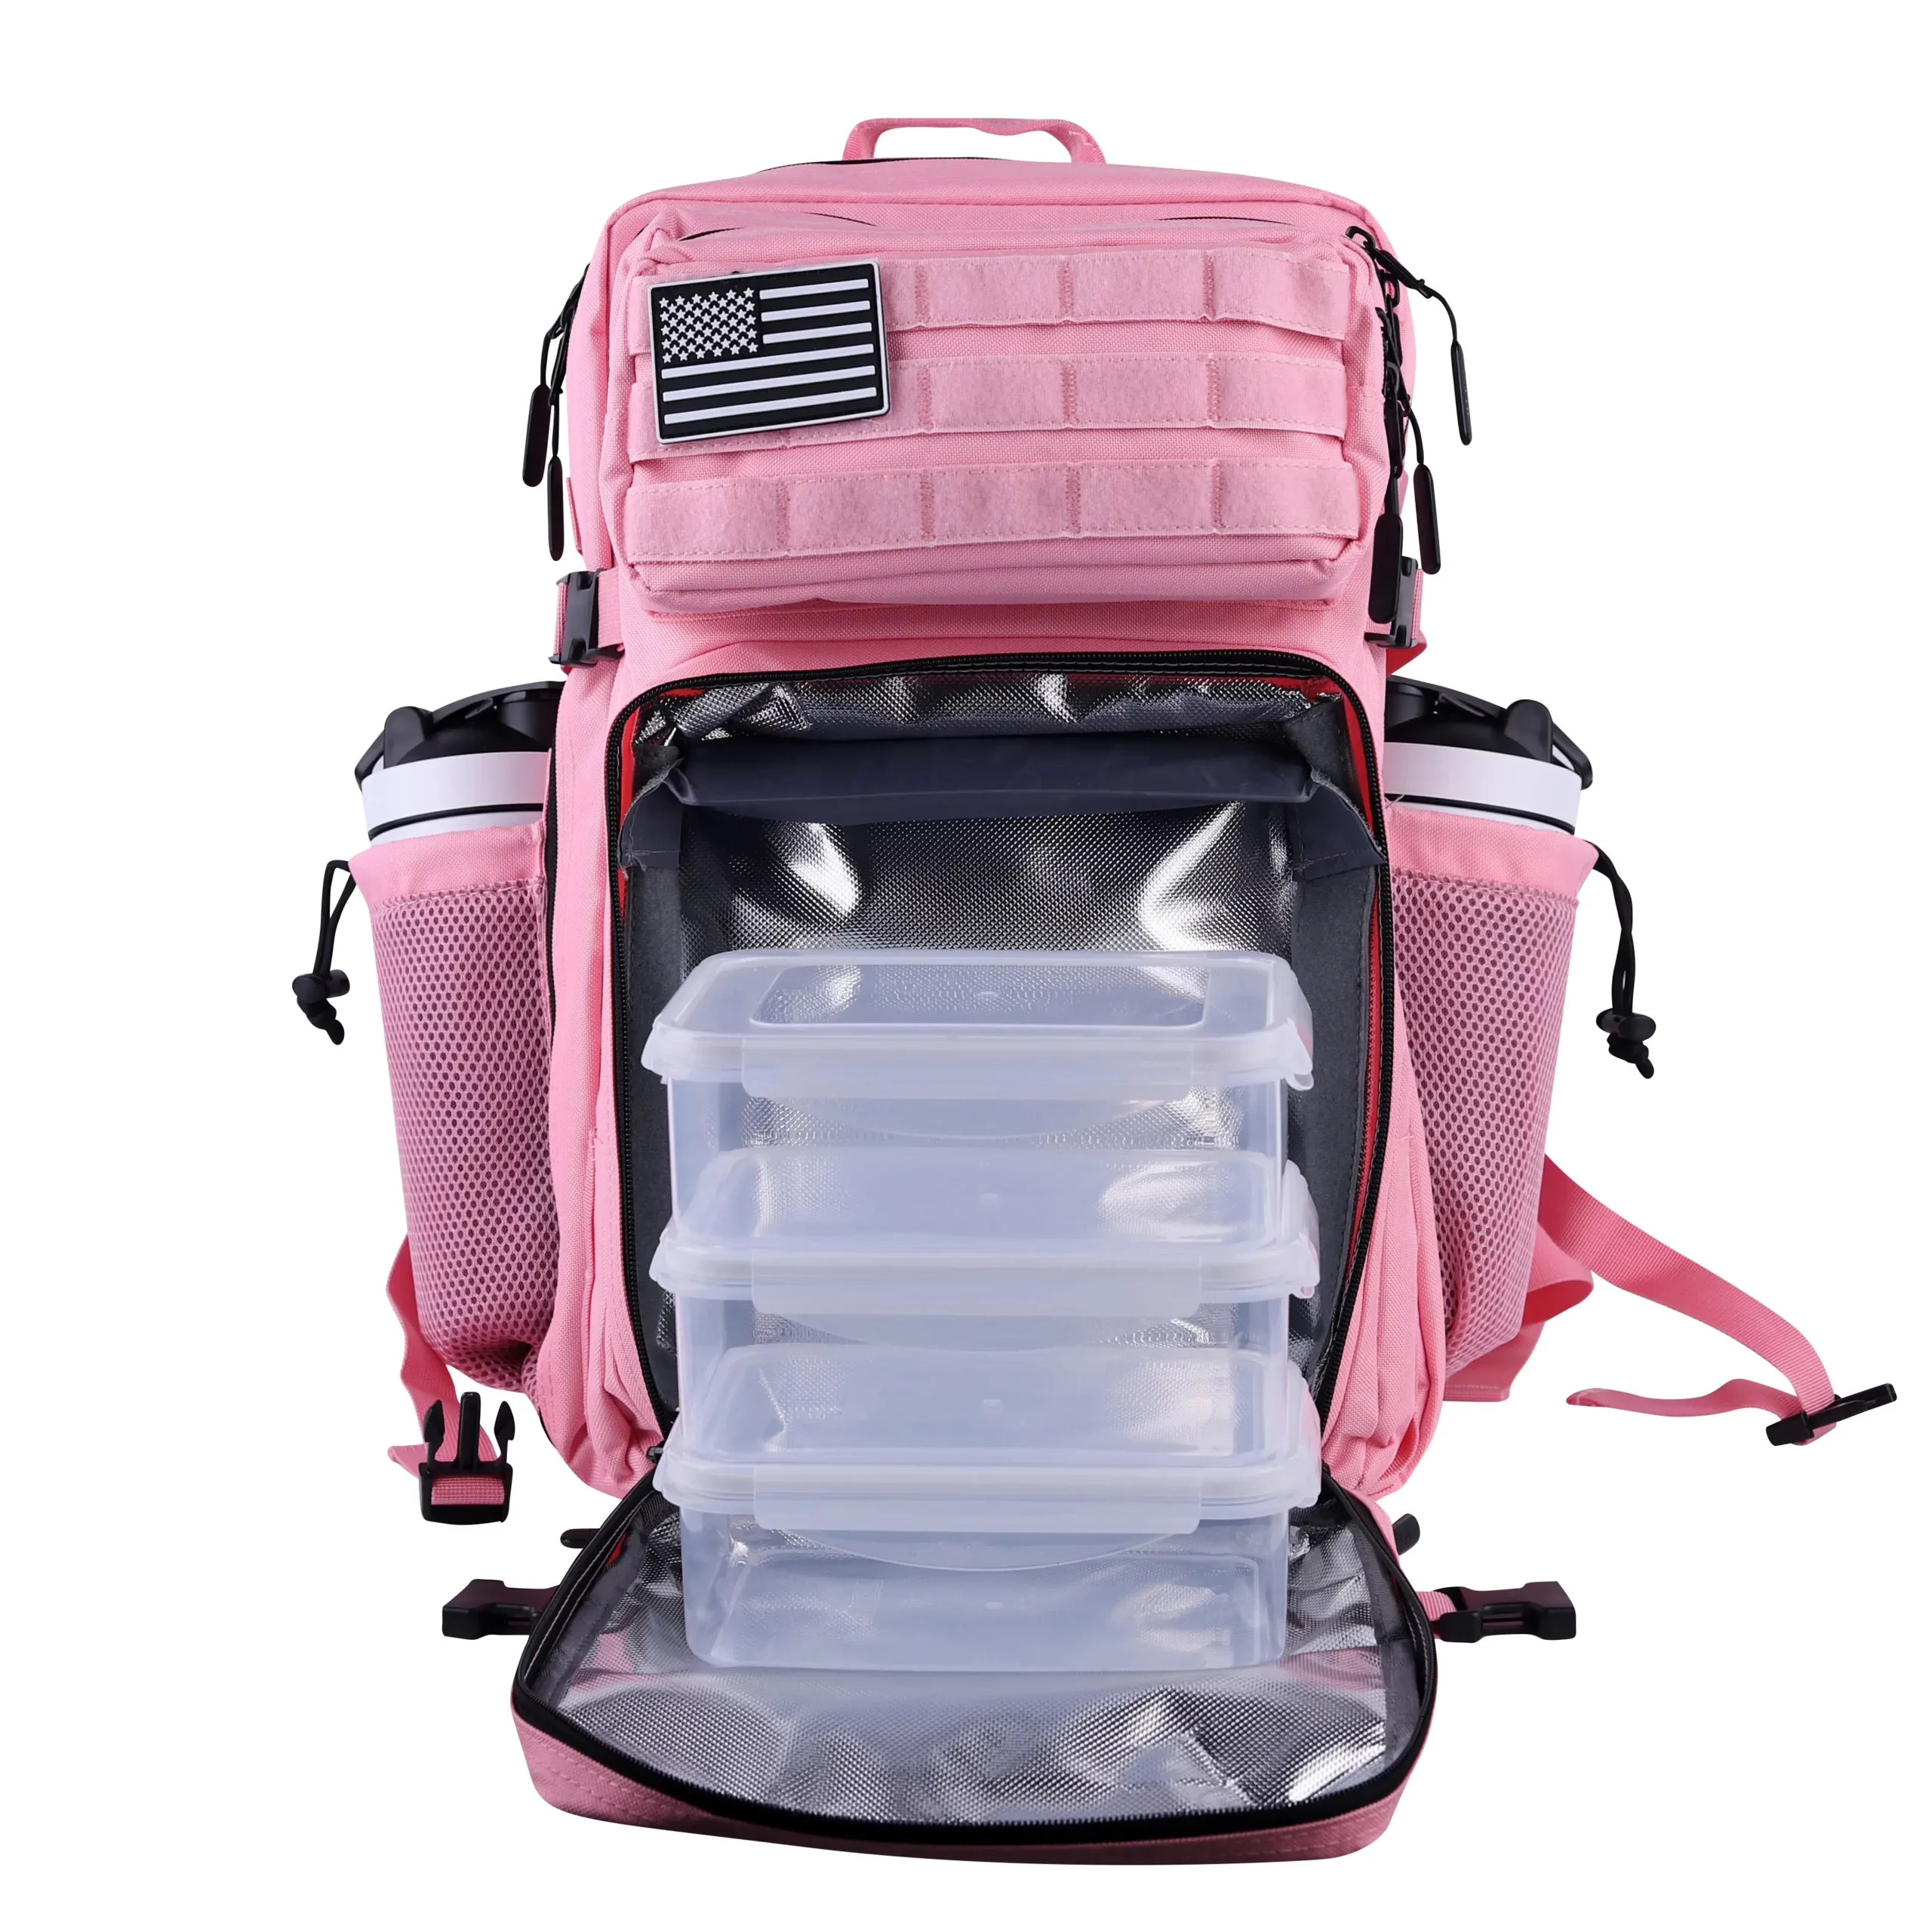 https://lhibackpack.com/wp-content/uploads/2022/05/LHI-45L-Meal-Prep-Management-Backpack-Pink-01-scaled.webp